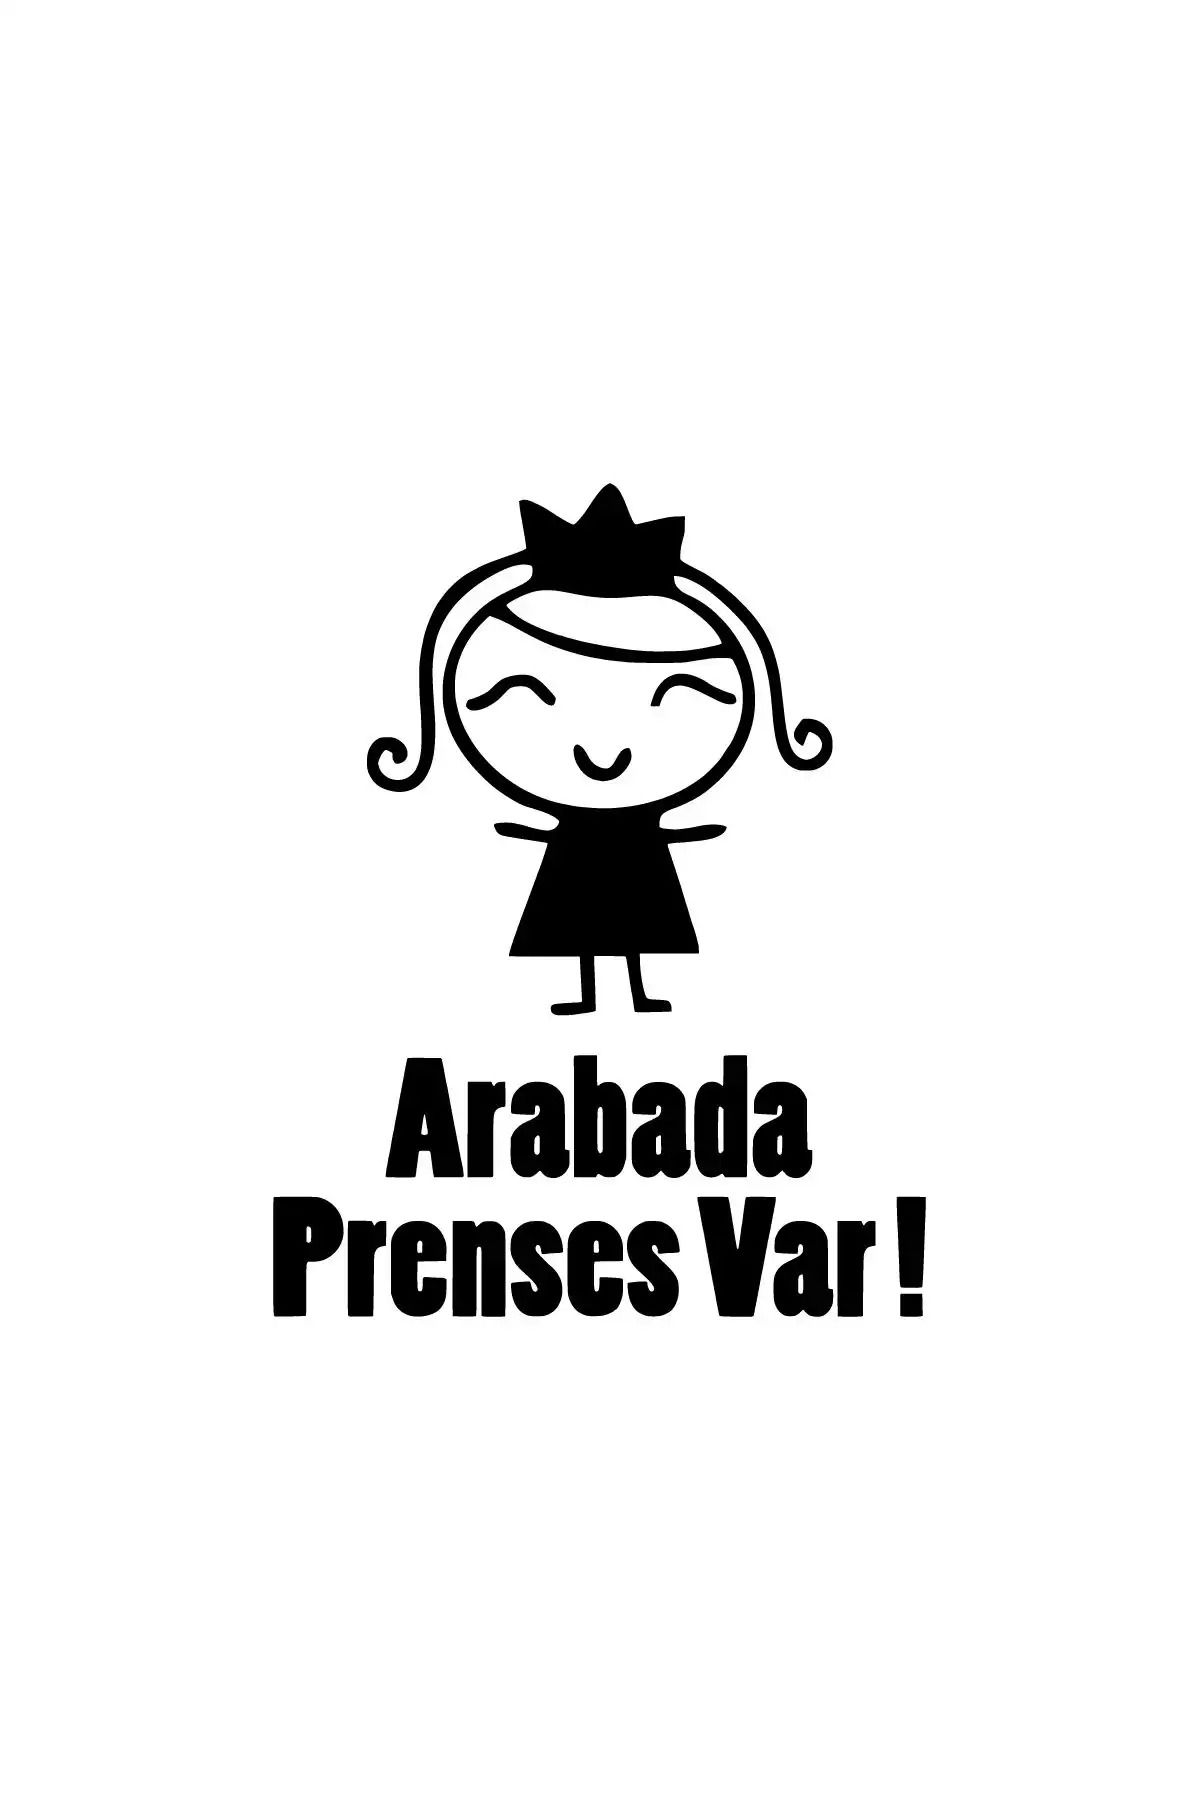 needesen Arabada Prenses Var Oto özel yeni sticker Siyah 15 x 19 cm